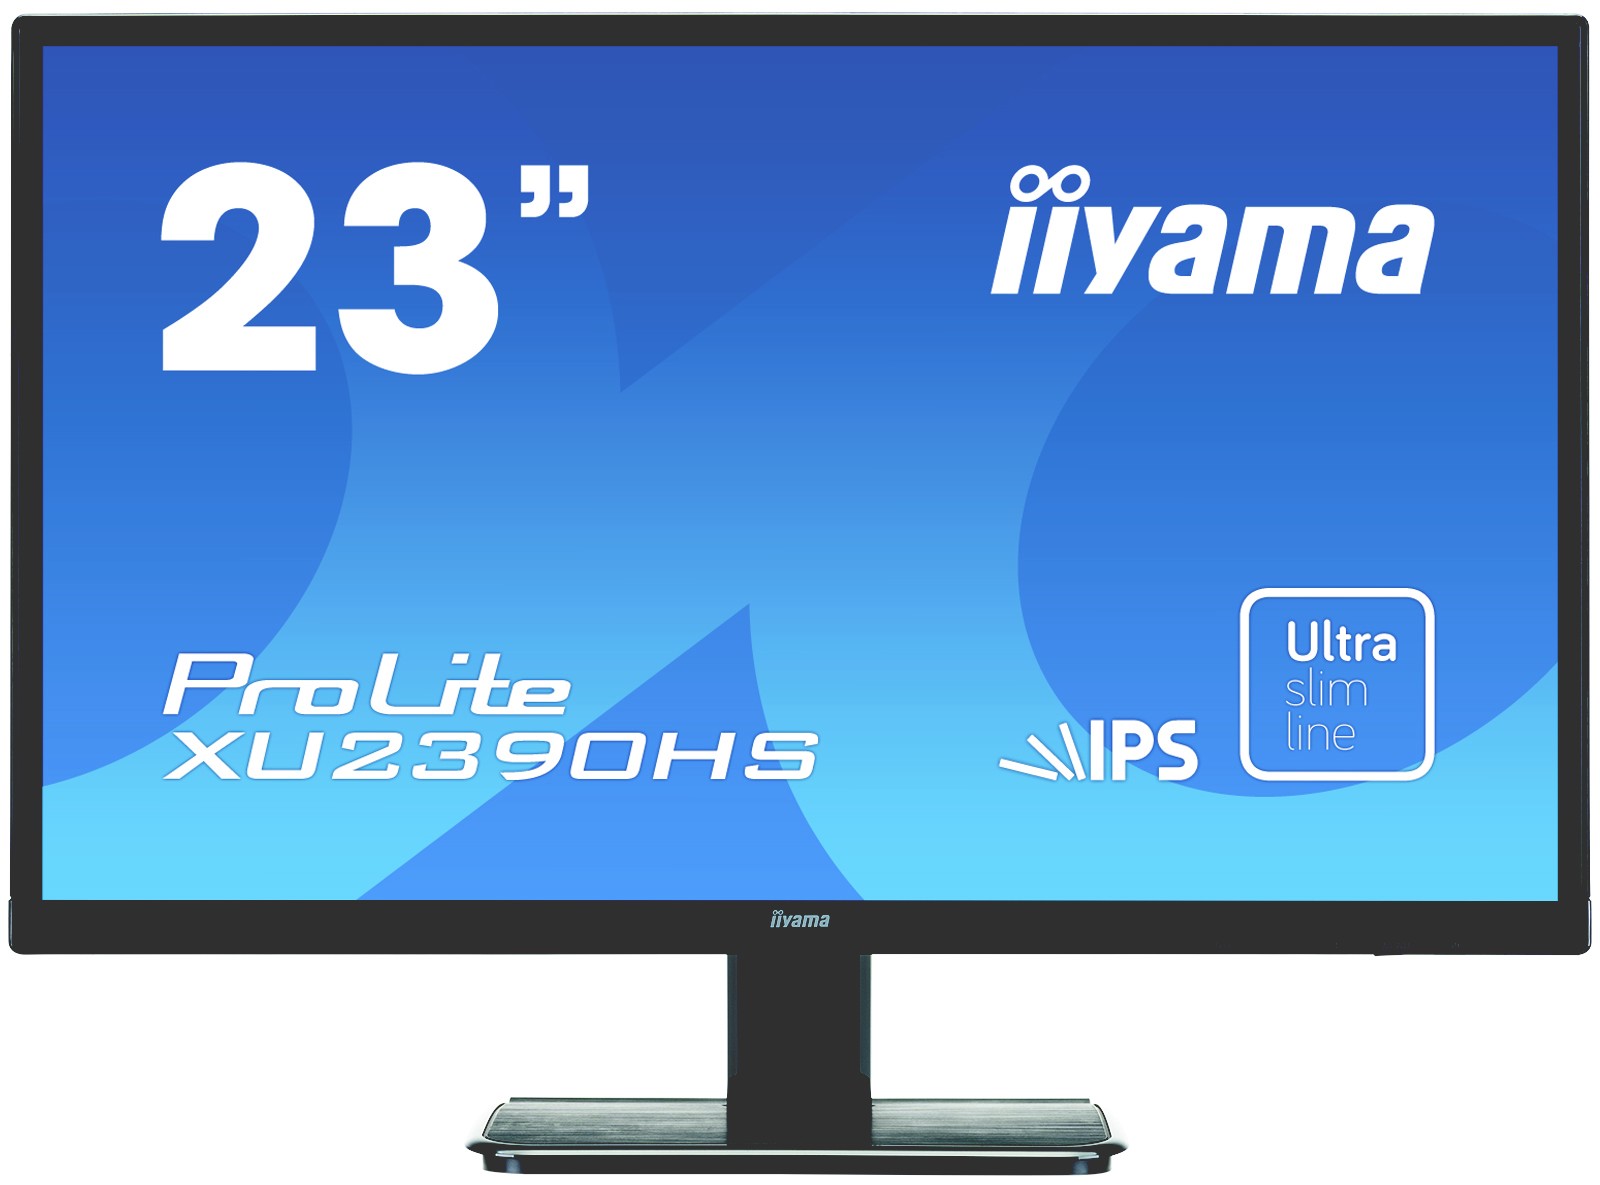 iiyama XU2390HS - ультратонкий 23-дюймовый монитор с IPS-матрицей вышел в России